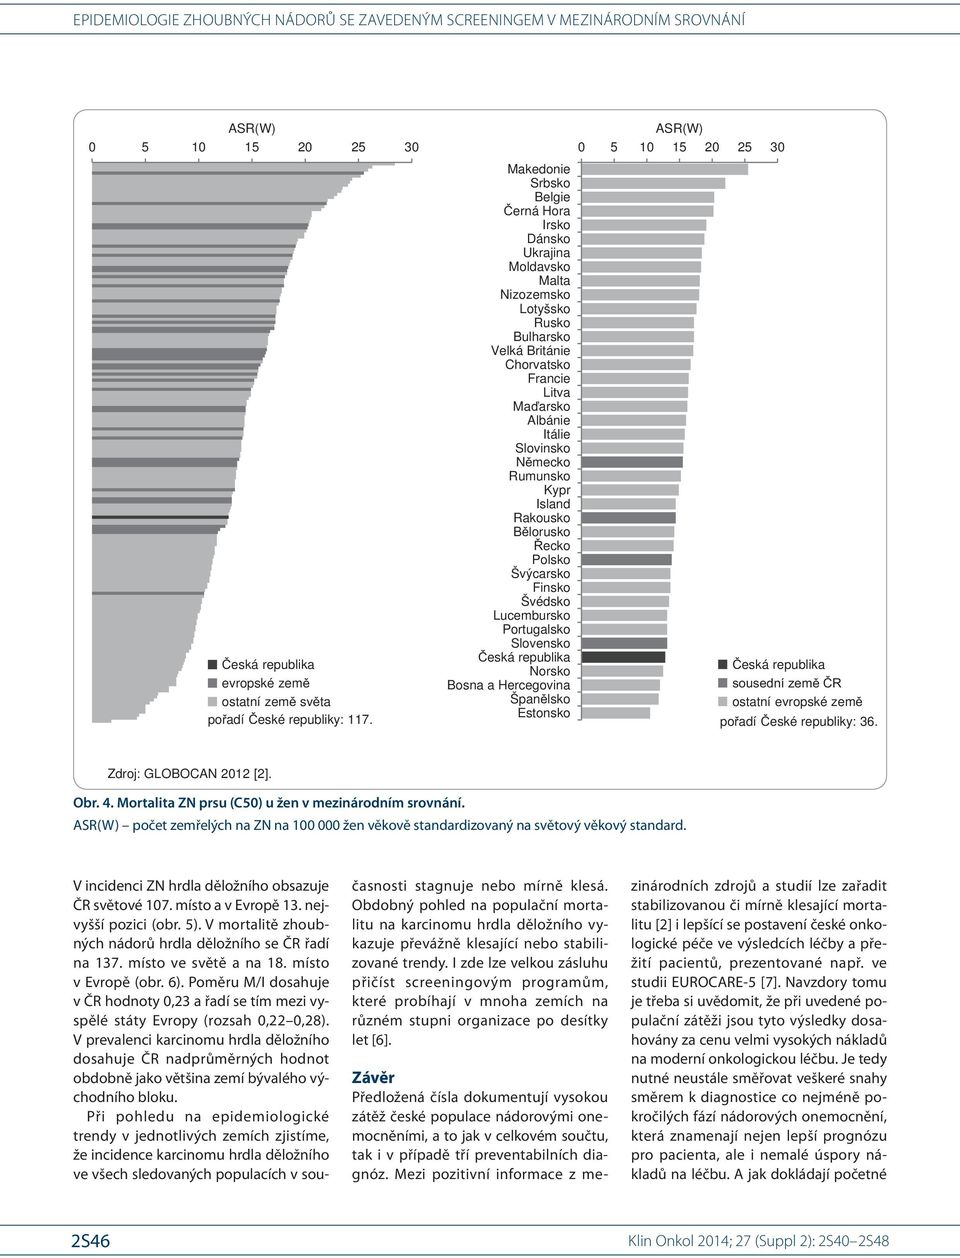 V mortalitě zhoubných nádorů hrdla děložního se ČR řadí na 137. místo ve světě a na 18. místo v Evropě (obr. 6).